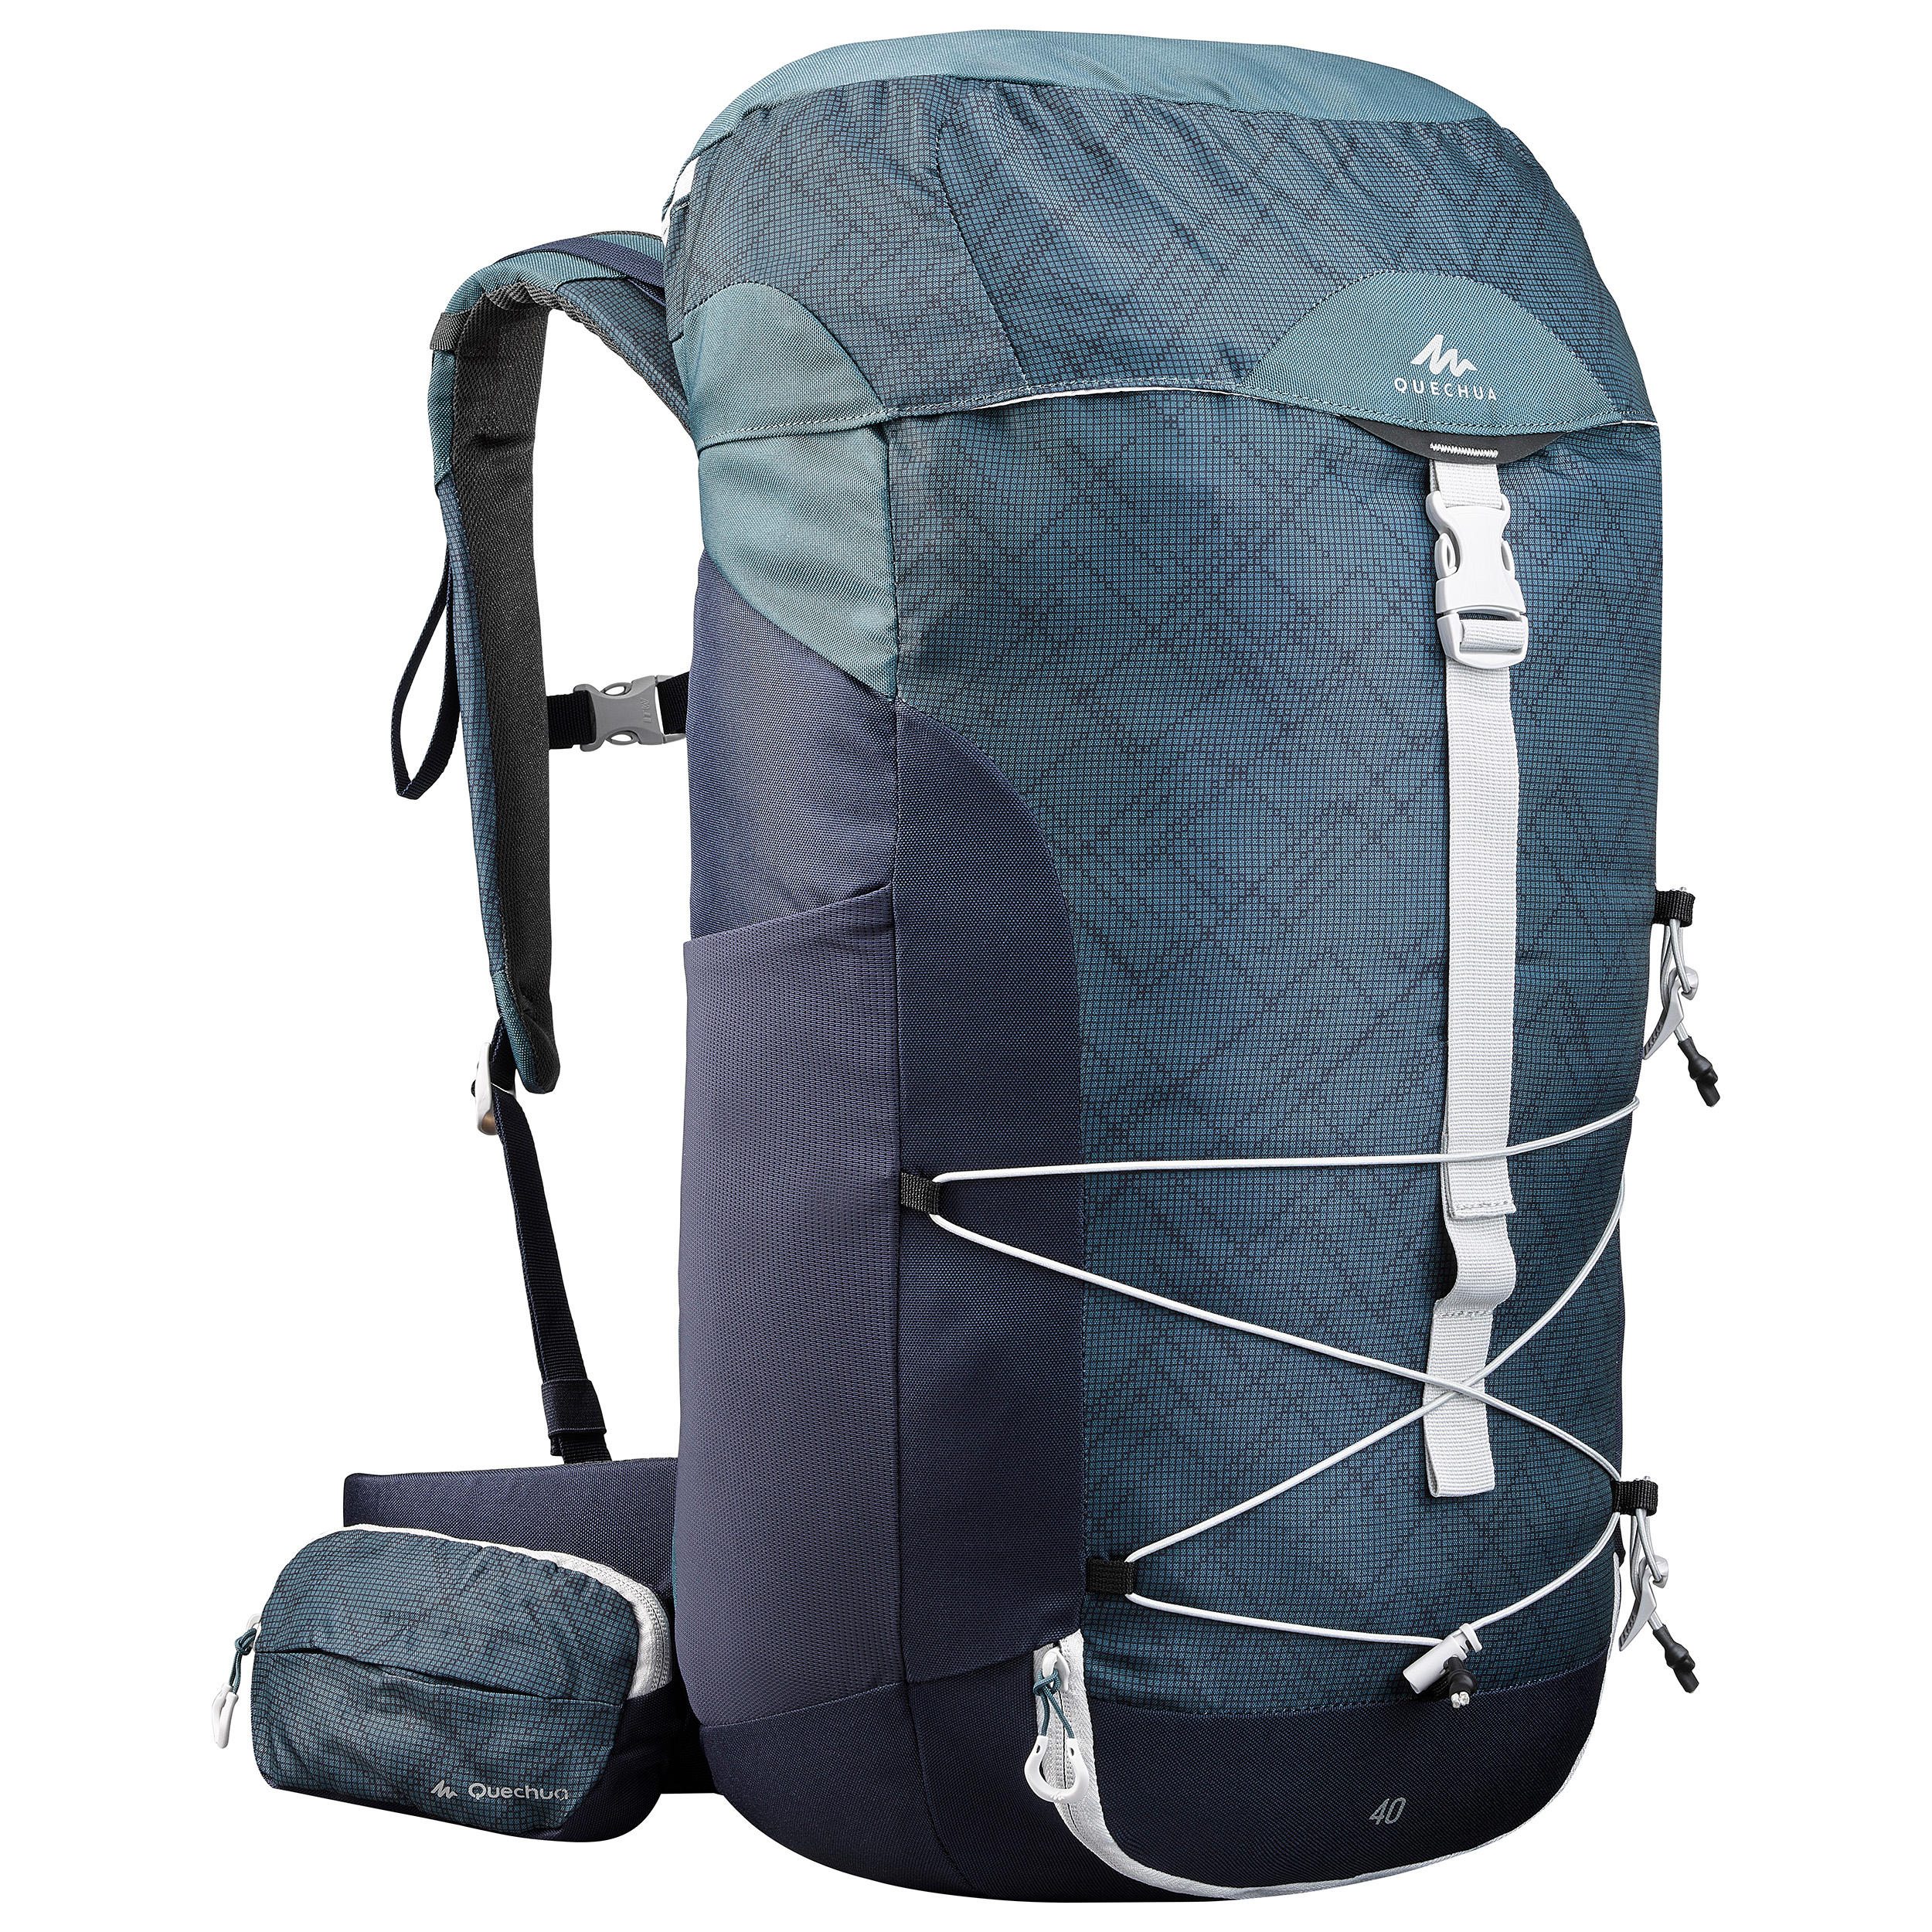 quechua backpack canada